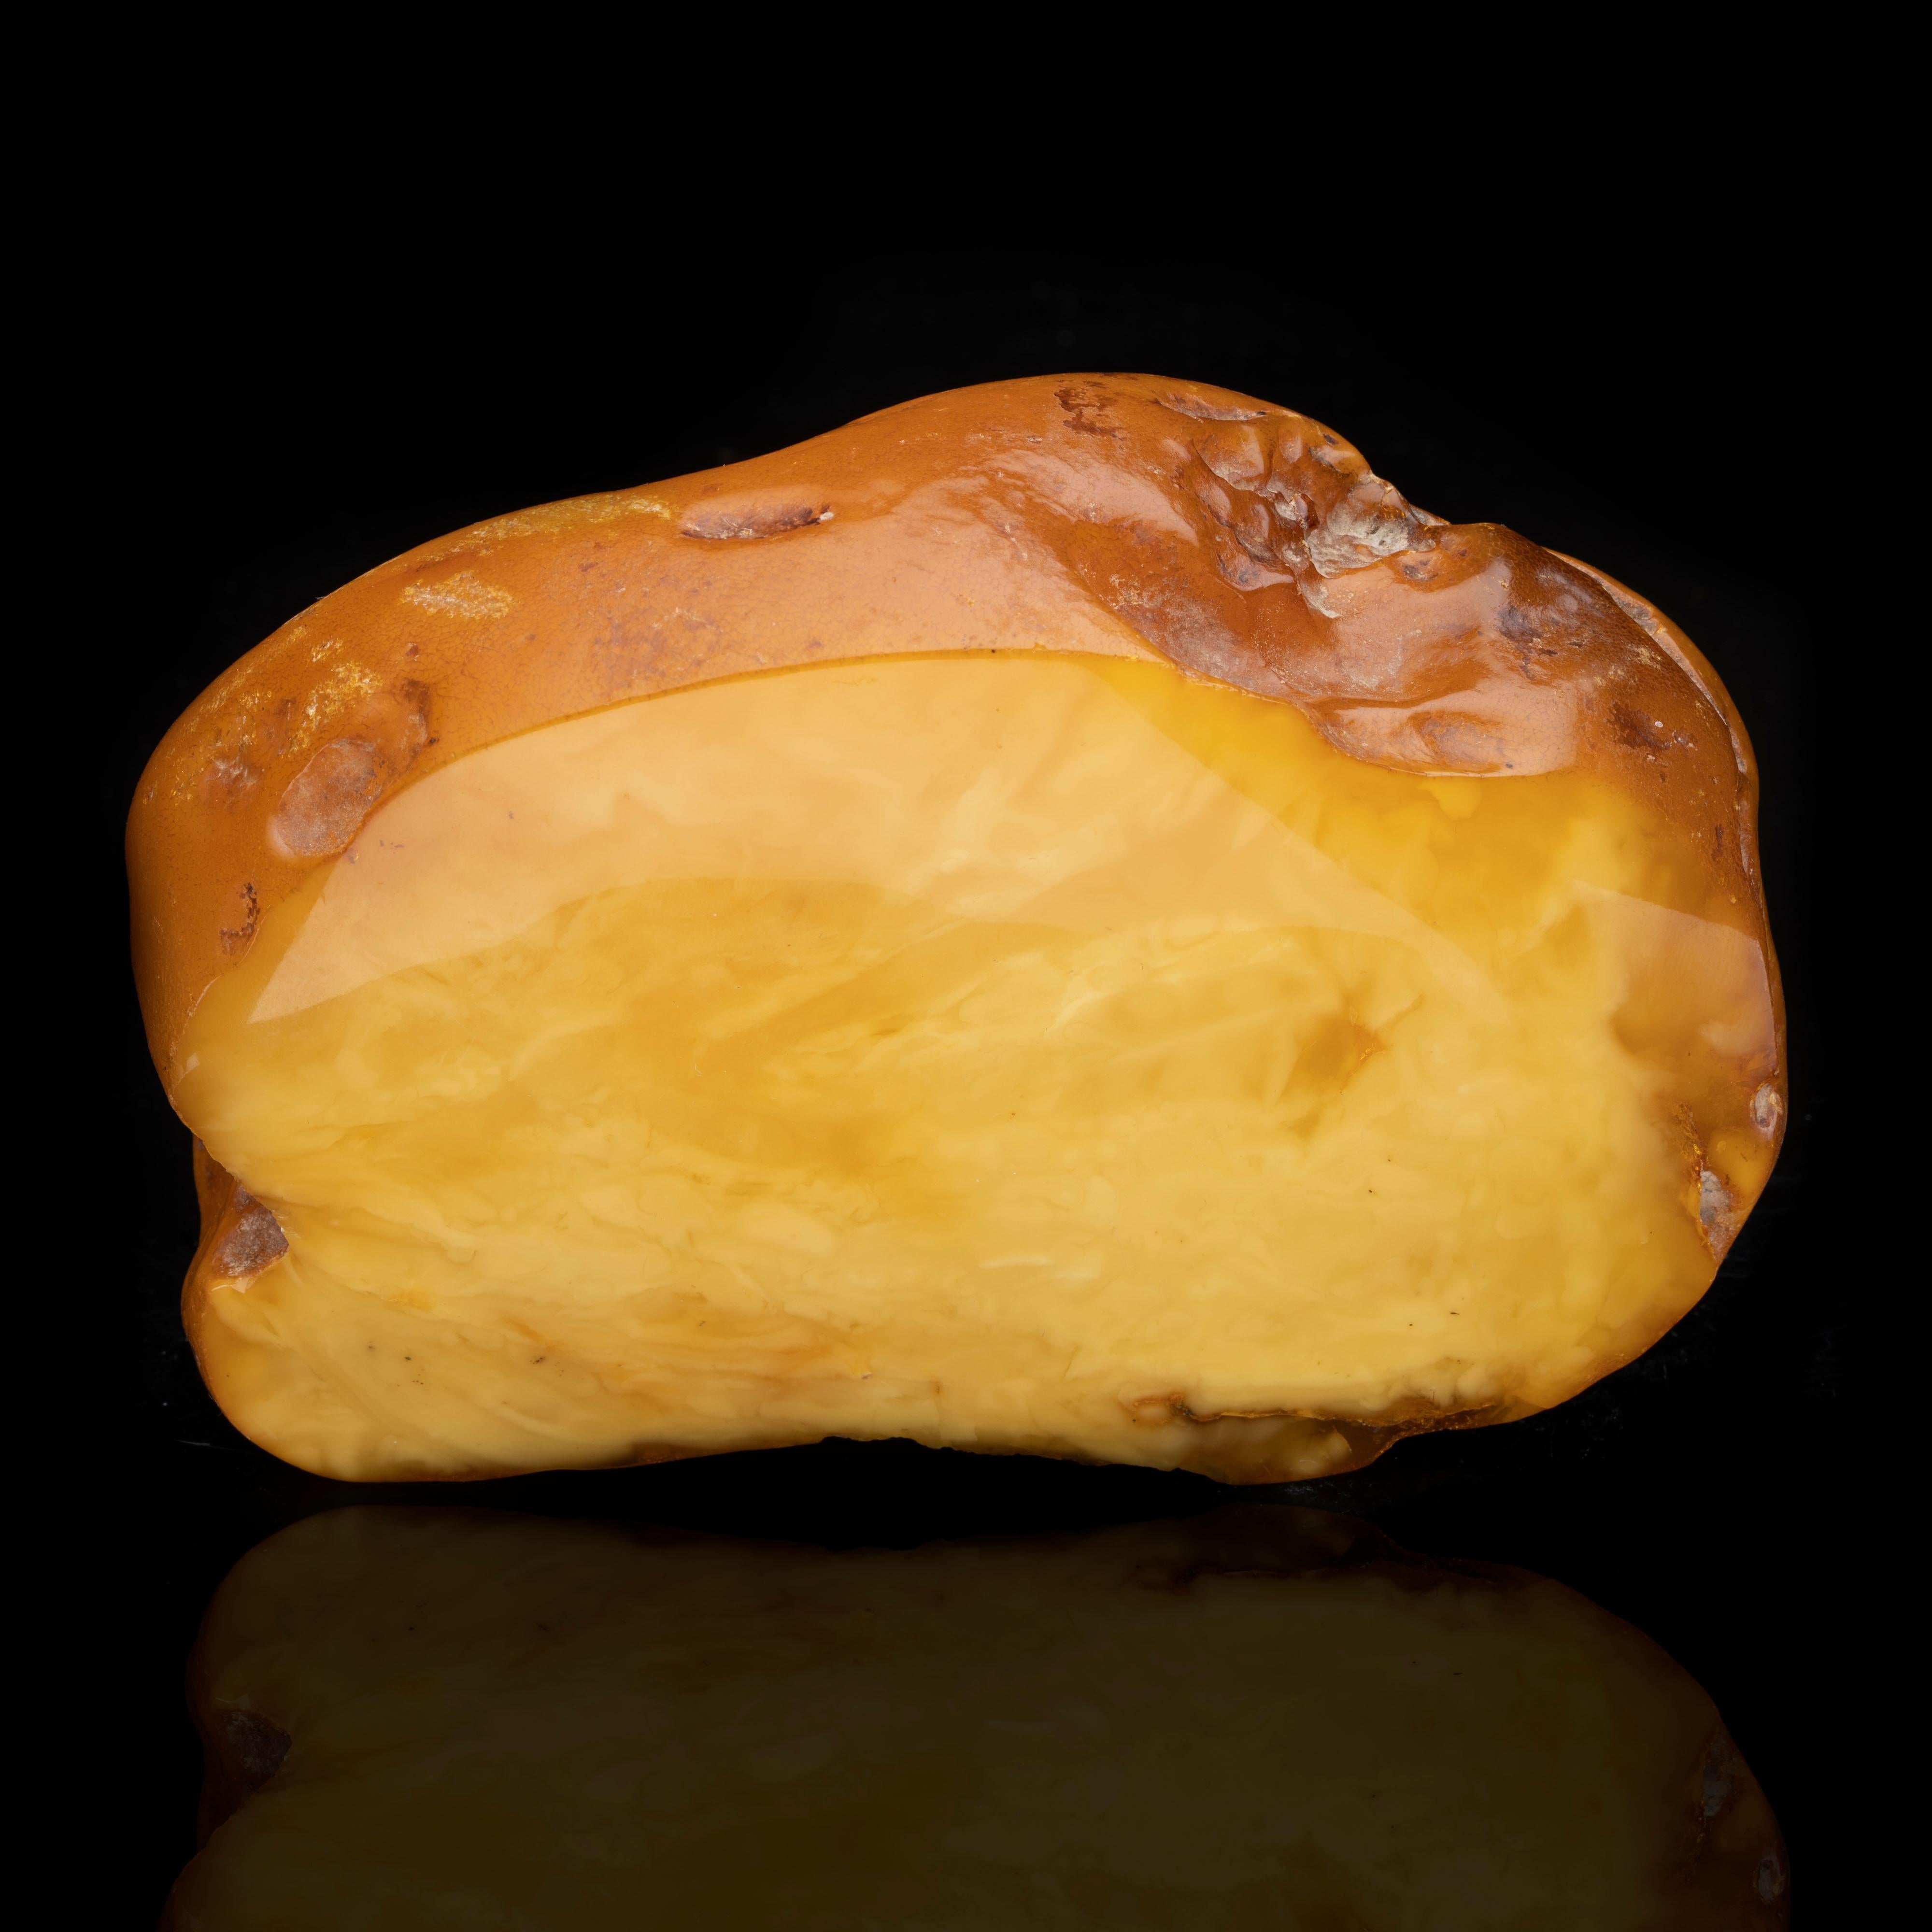 Région de la Baltique

L'ambre est une résine d'arbre fossilisée, appréciée pour sa couleur et sa beauté naturelle depuis le néolithique. Il s'agit d'un spécimen exceptionnellement grand d'ambre caramel de la région de la Baltique. Une face est